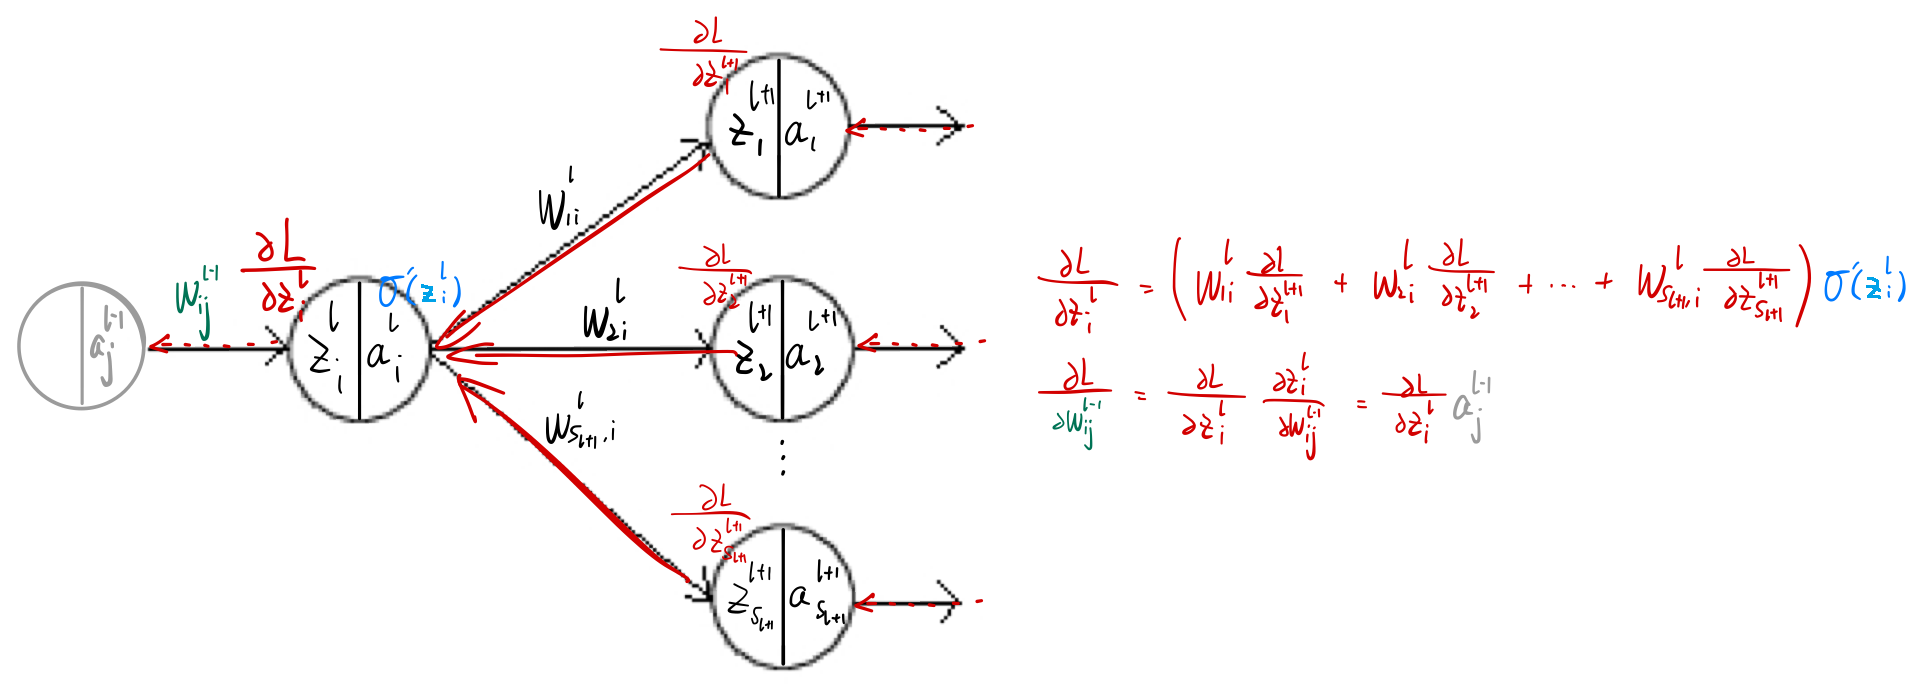 图1. 反向传播示例（黑色箭头代表前向传播，红色箭头代表反向传播